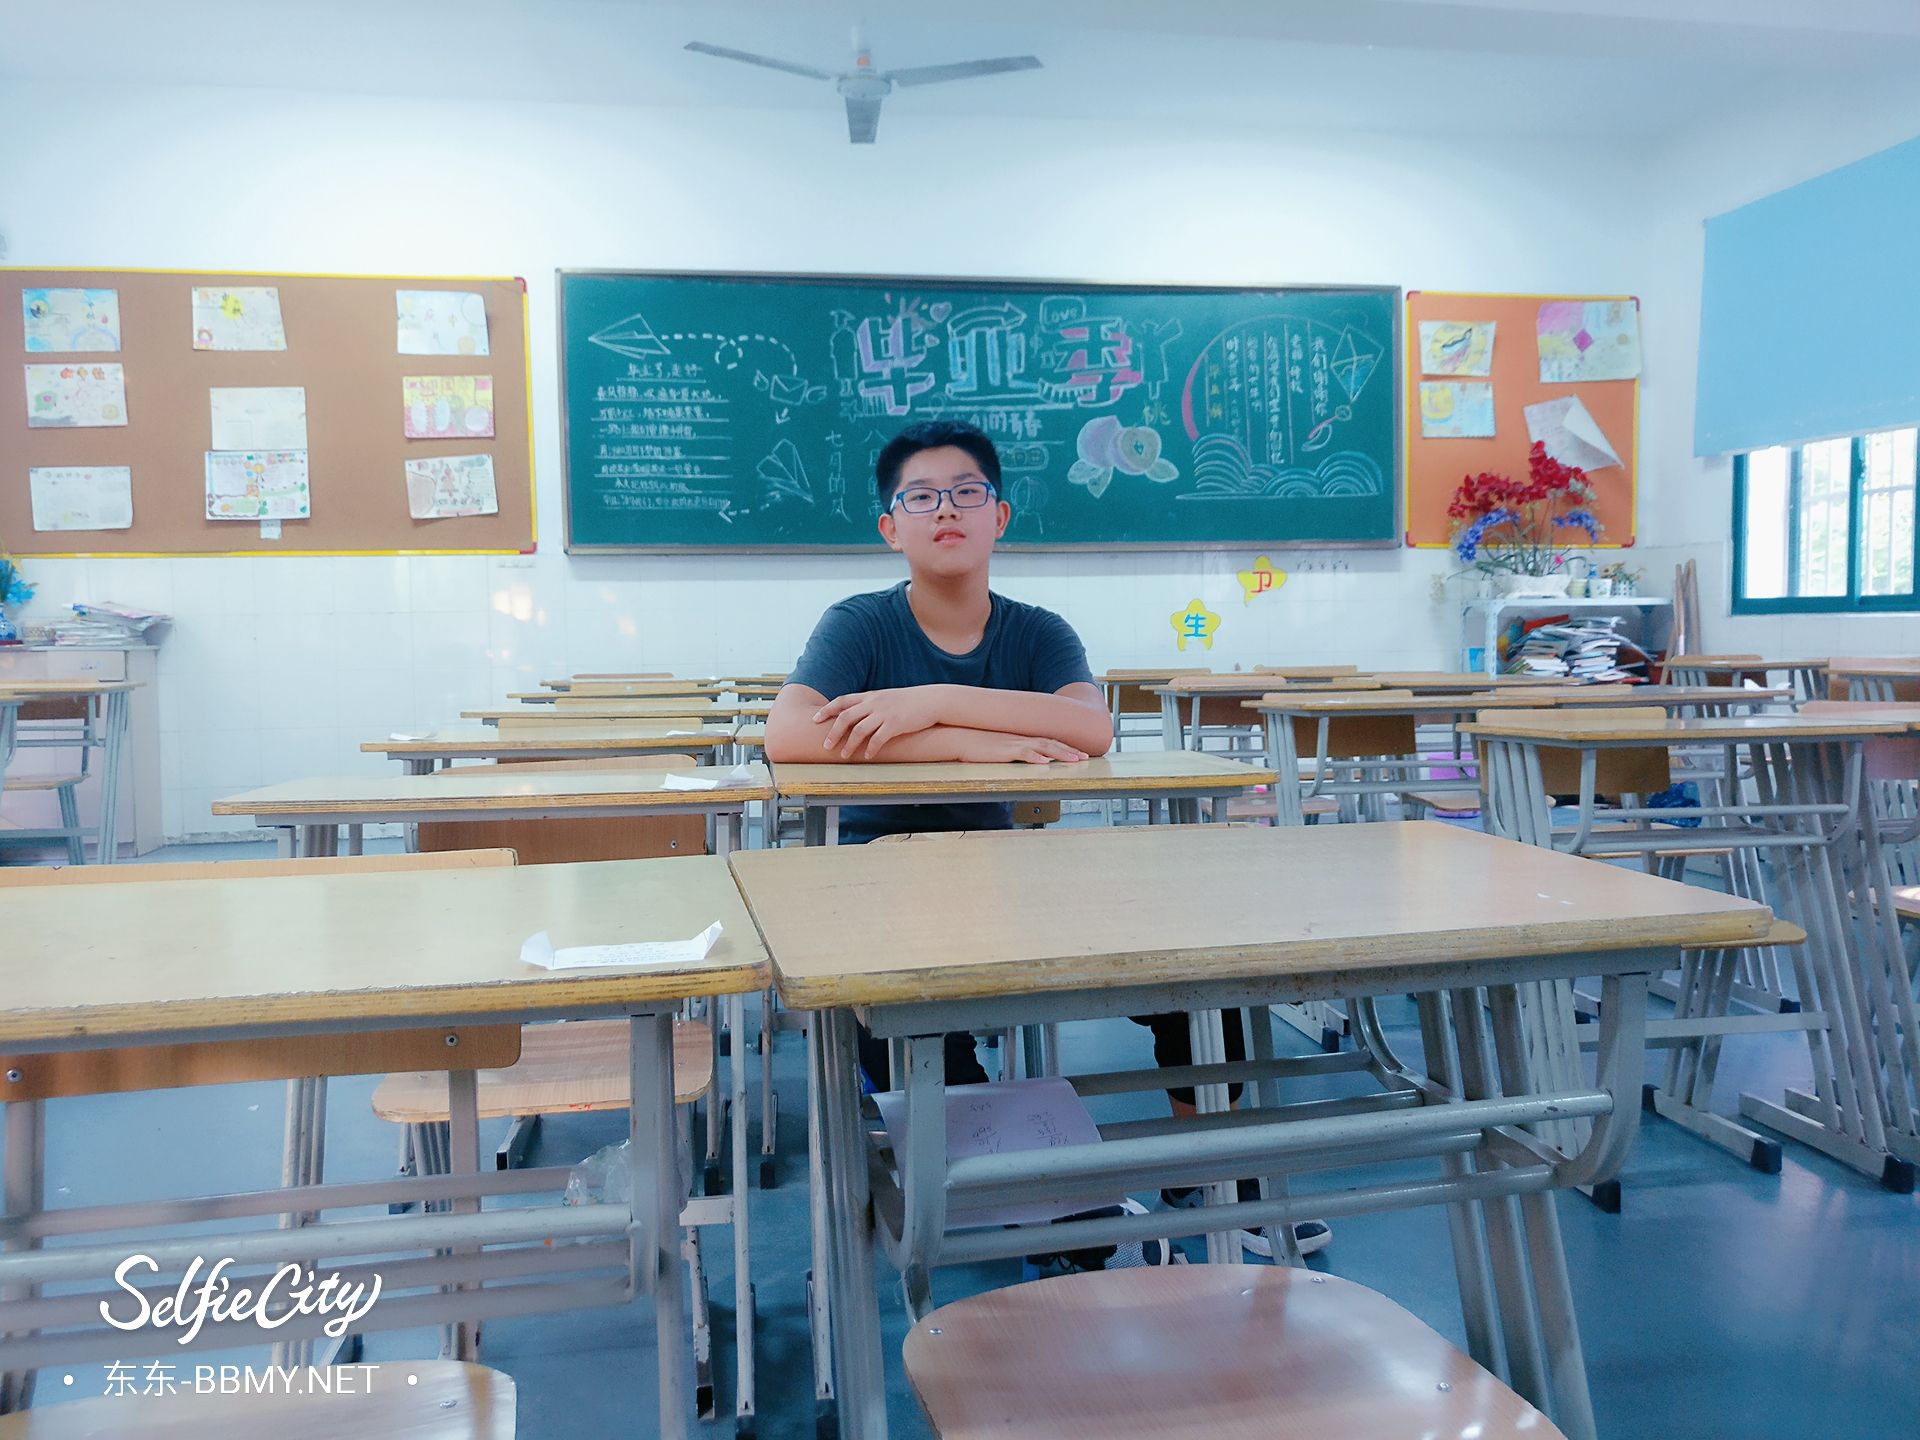 金东浩成长日记滁州路小学上课的最后一天照片SelfieCity_20210923151946_org.jpg